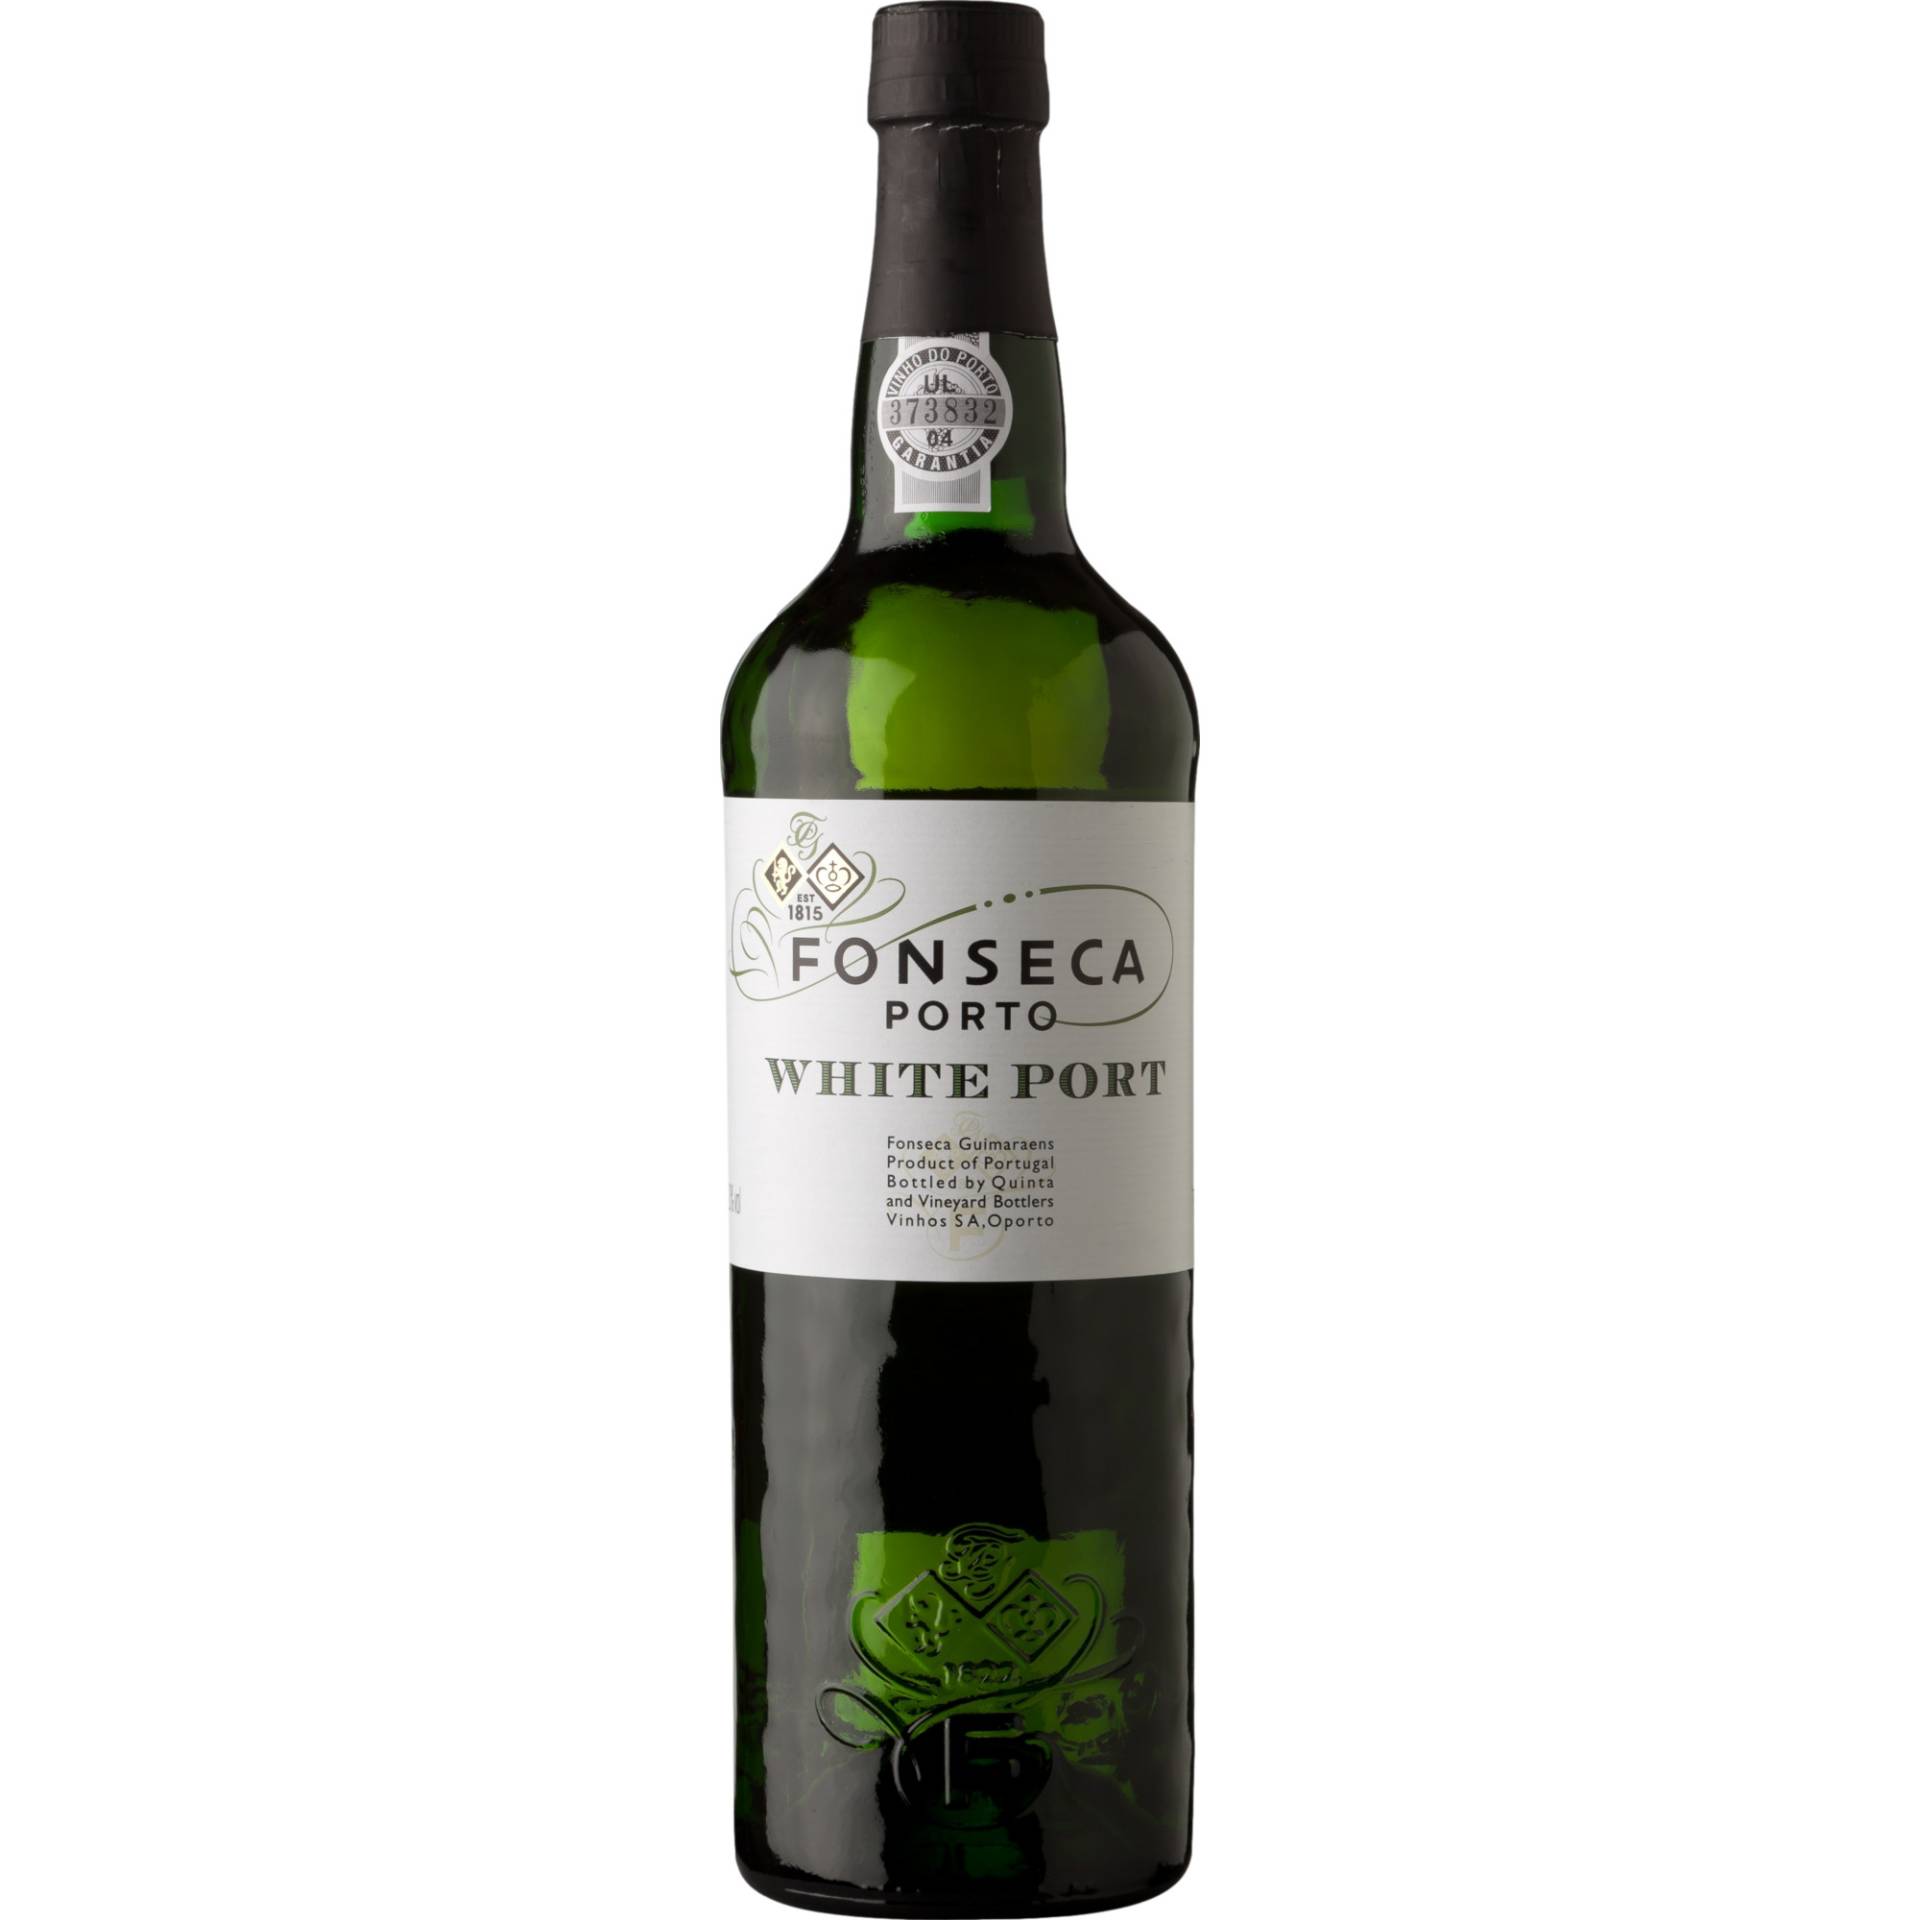 Fonseca White Port, 0,75 L, Douro, Spirituosen von Quinta and Vineyard Bottlers Vinhos SA,Rua Do Choupelo, 250, 4400-088, V. N. Gaia